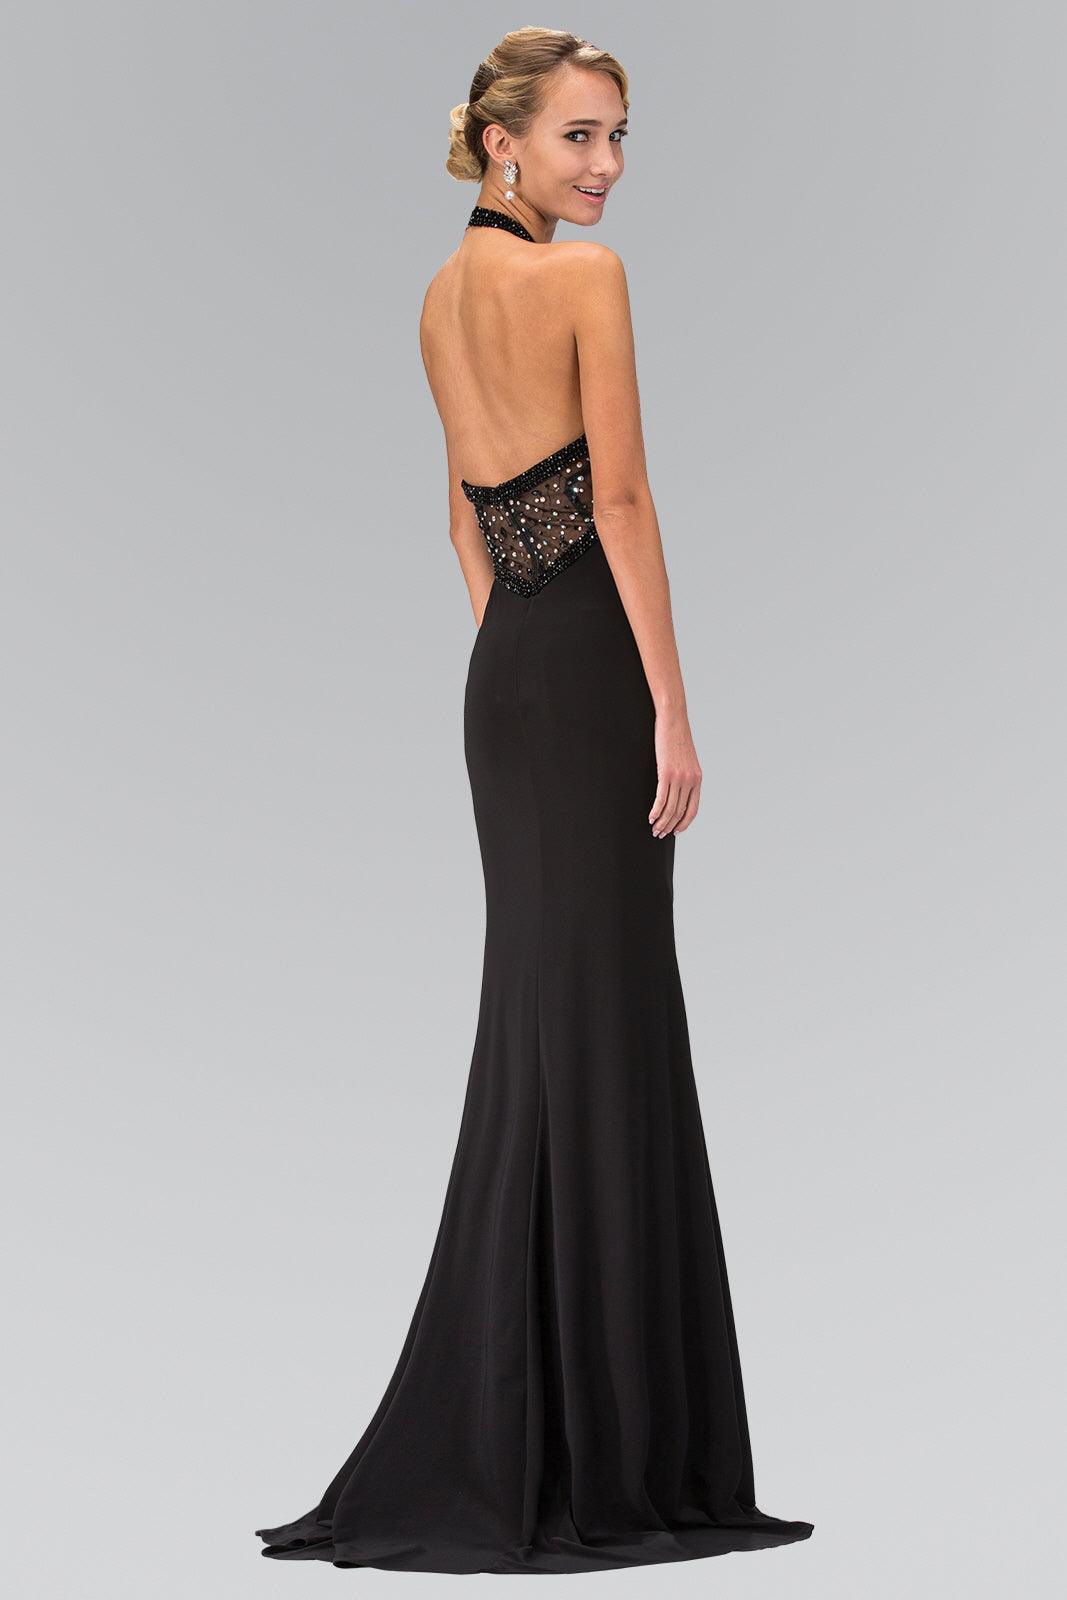 Prom Long Halter Beaded Dress Formal Gown - The Dress Outlet Elizabeth K